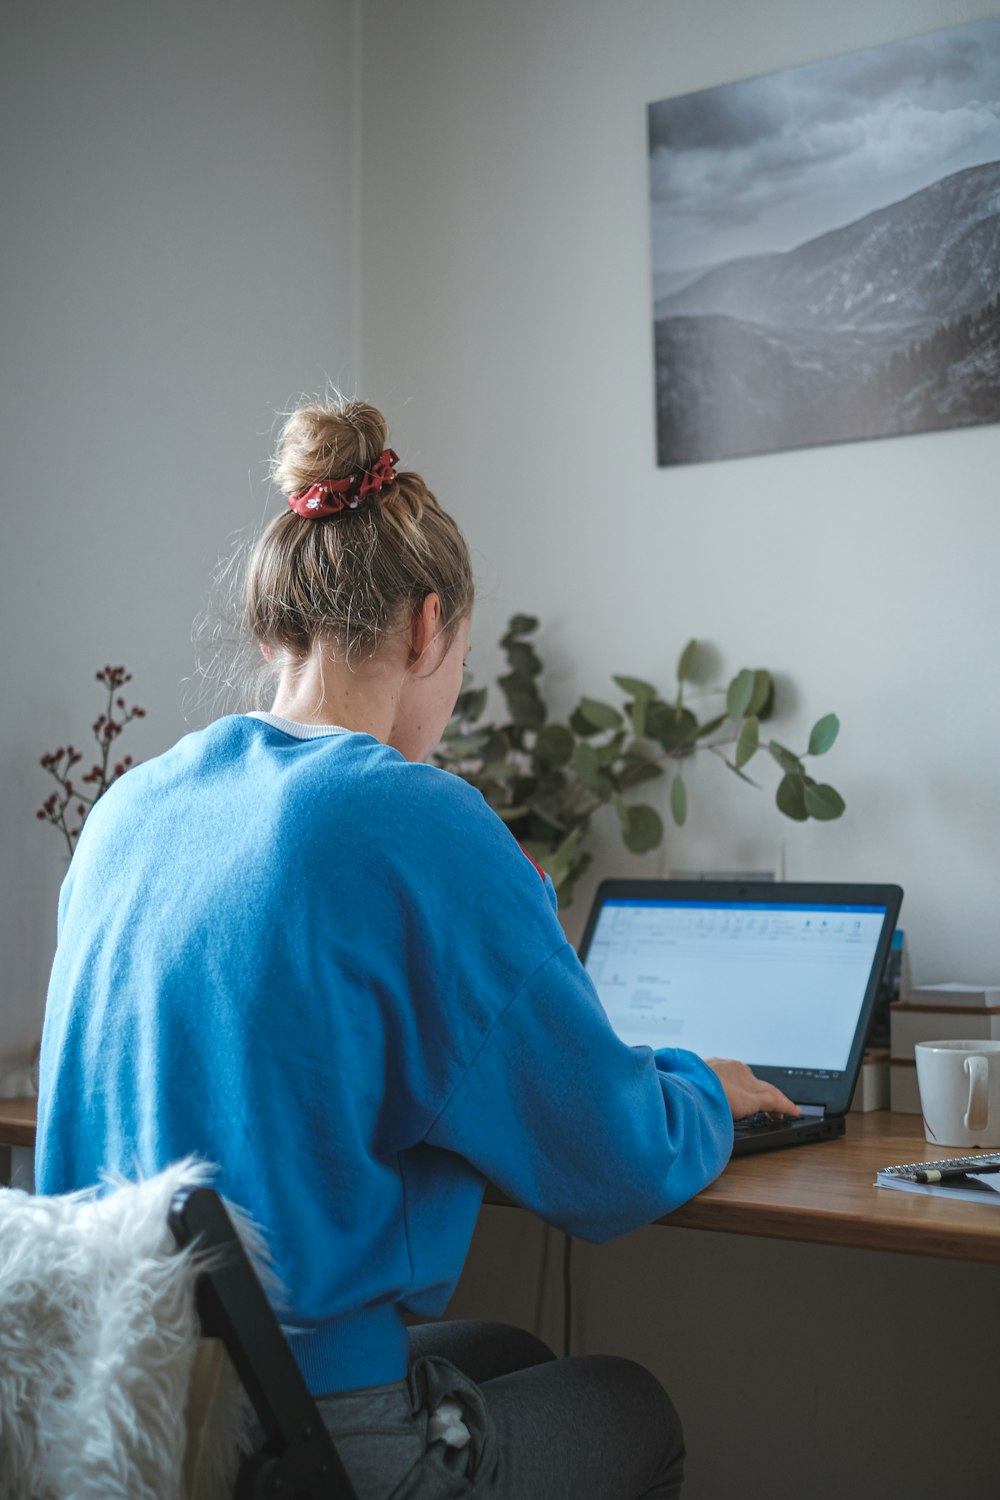 노트북 컴퓨터 앞에 앉아 있는 파란색 스웨터를 입은 여자